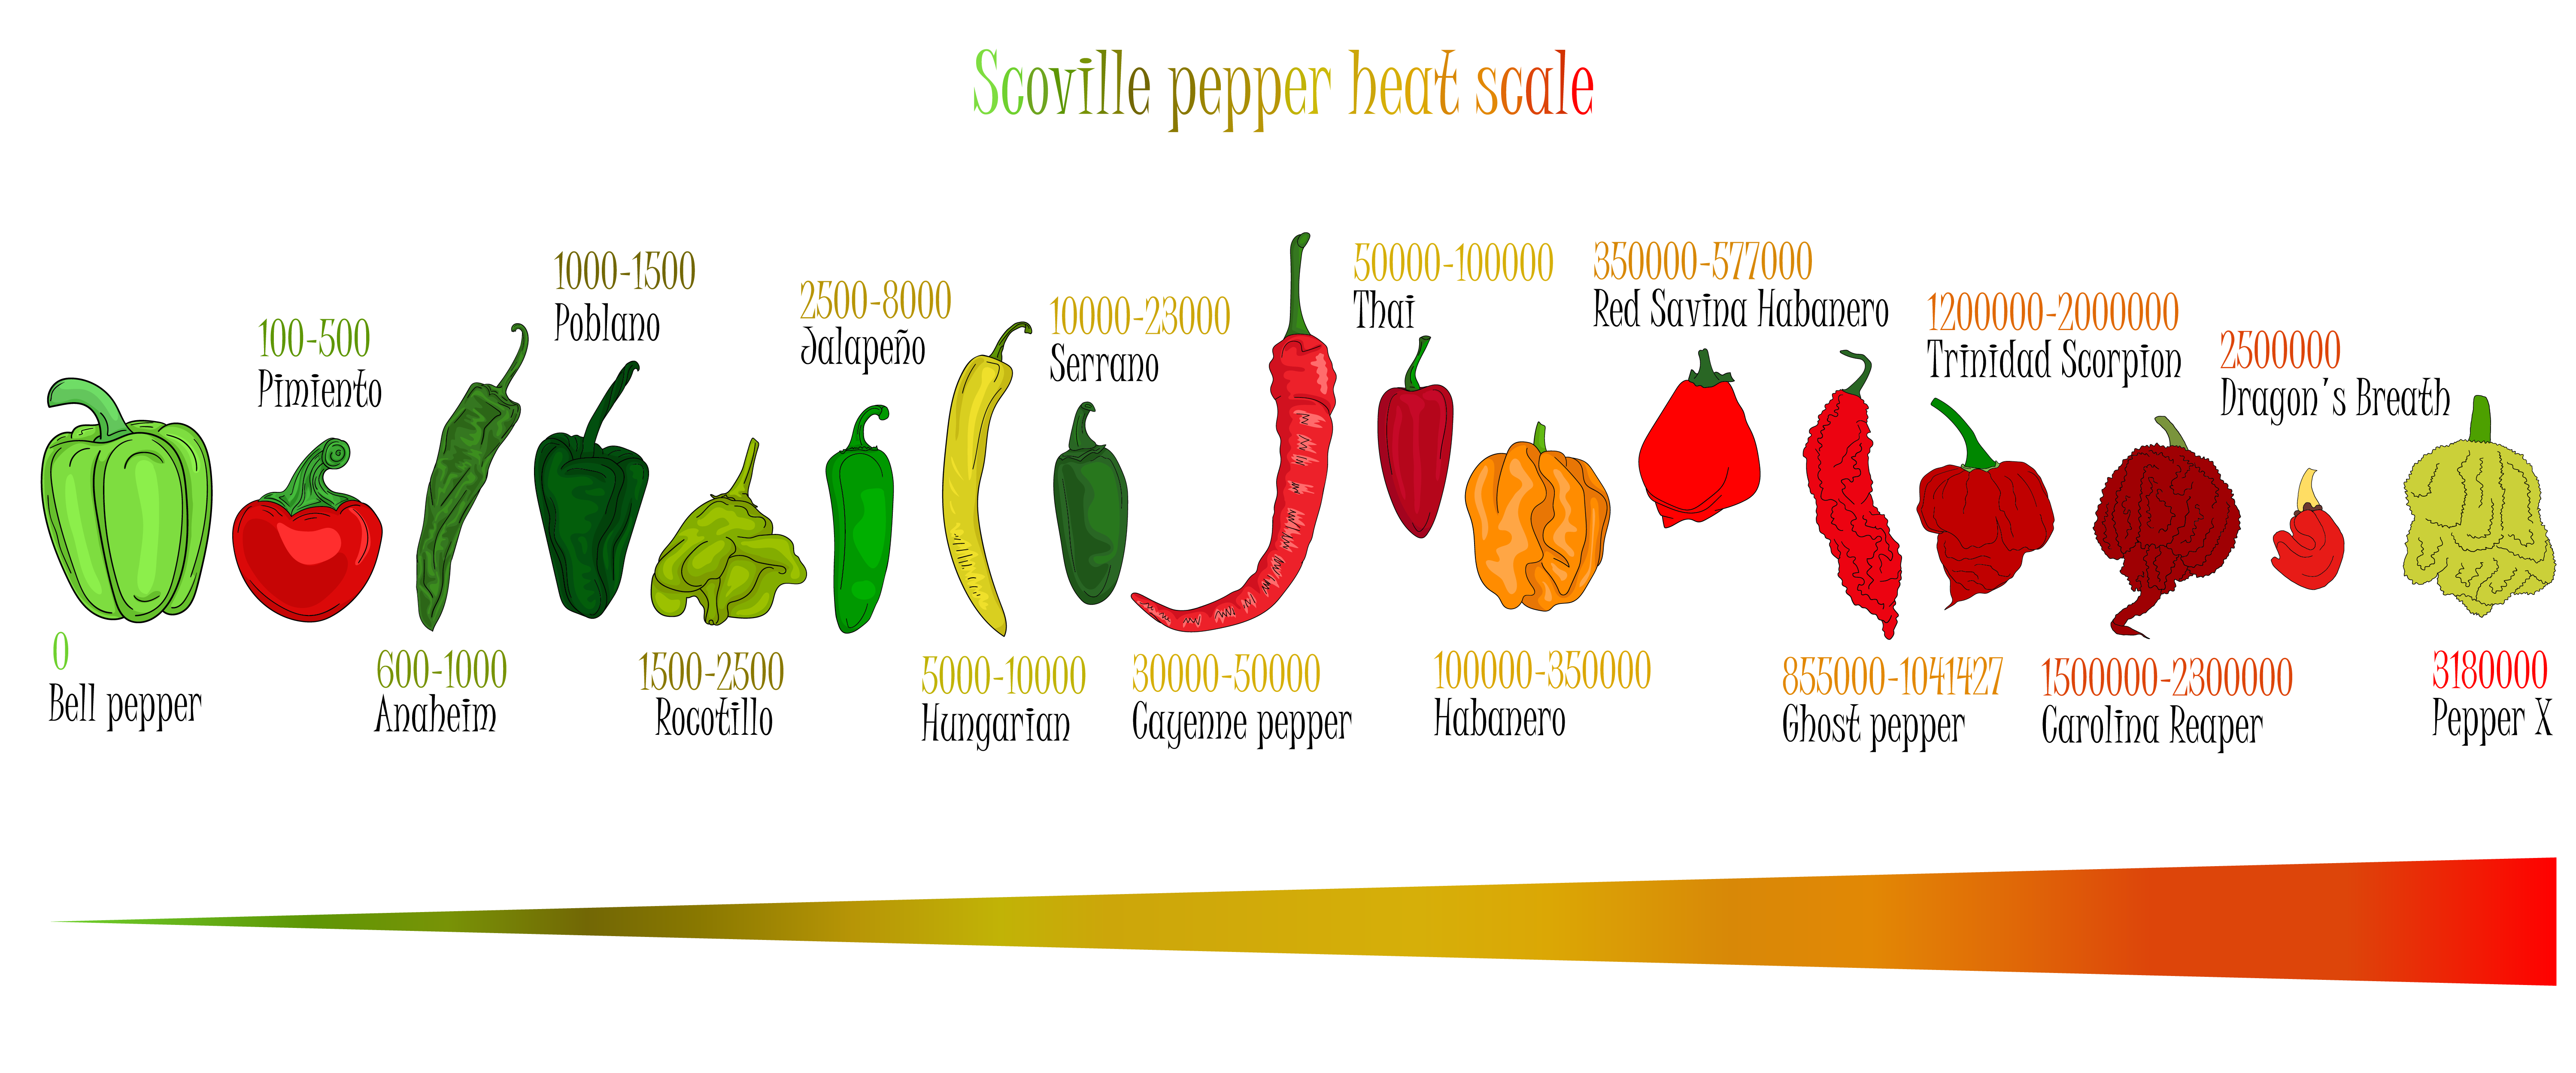 carolina reaper pepper scoville scale